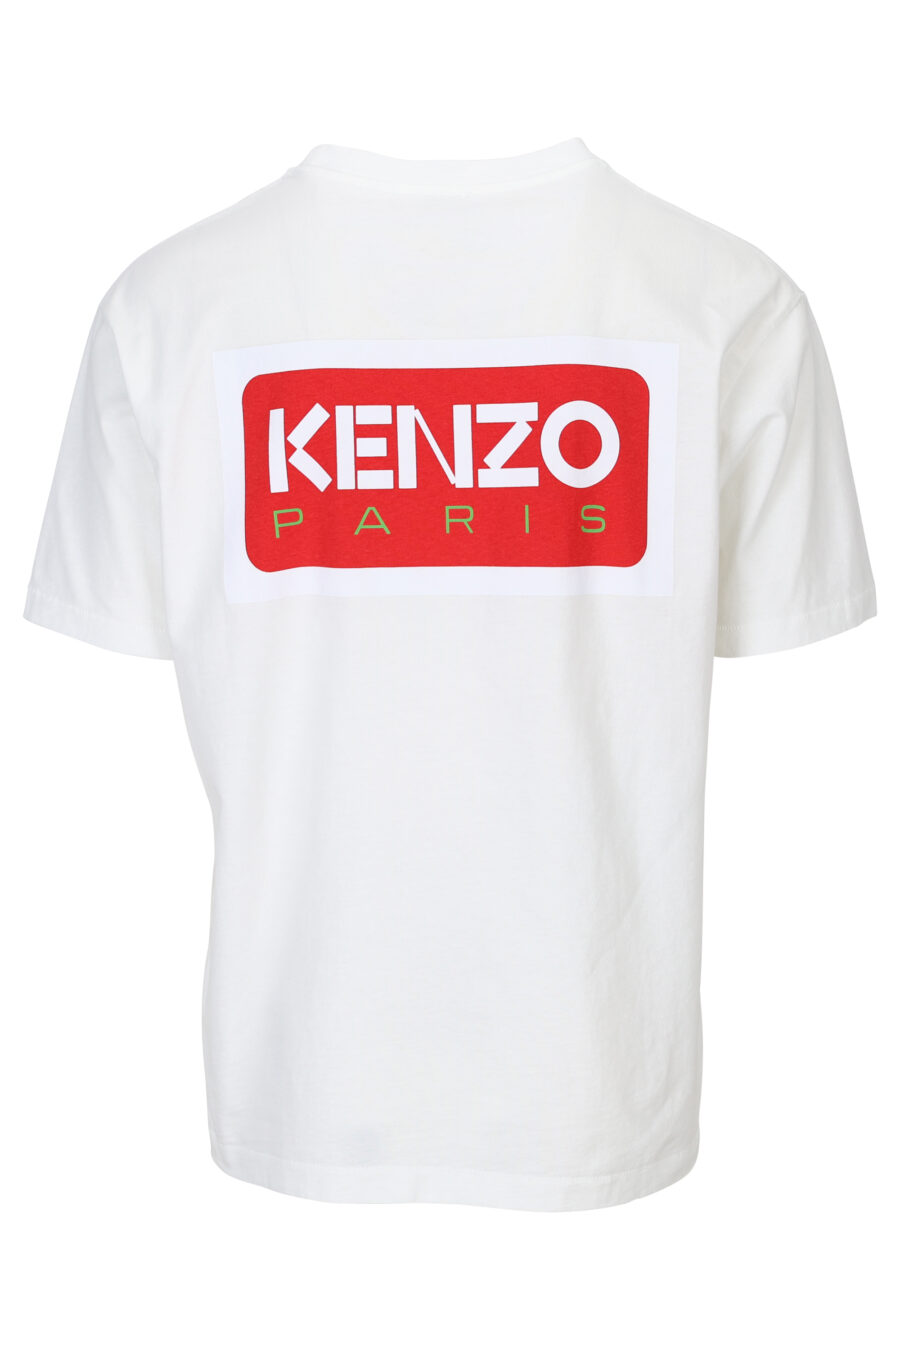 T-shirt branca com maxilogo "kenzo paris" nas costas - 3612230543140 1